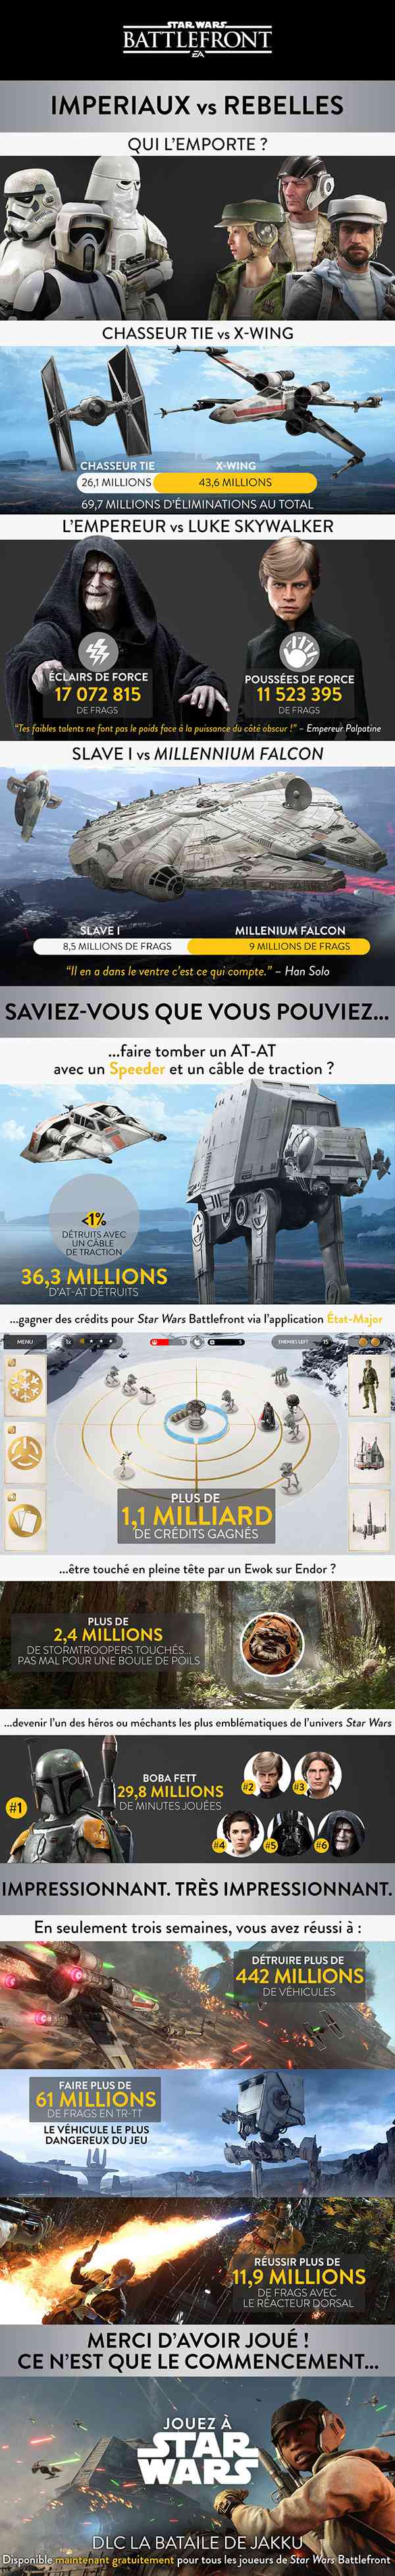 Star Wars Battlefront : les statistiques après 1 mois de jeu Battle10